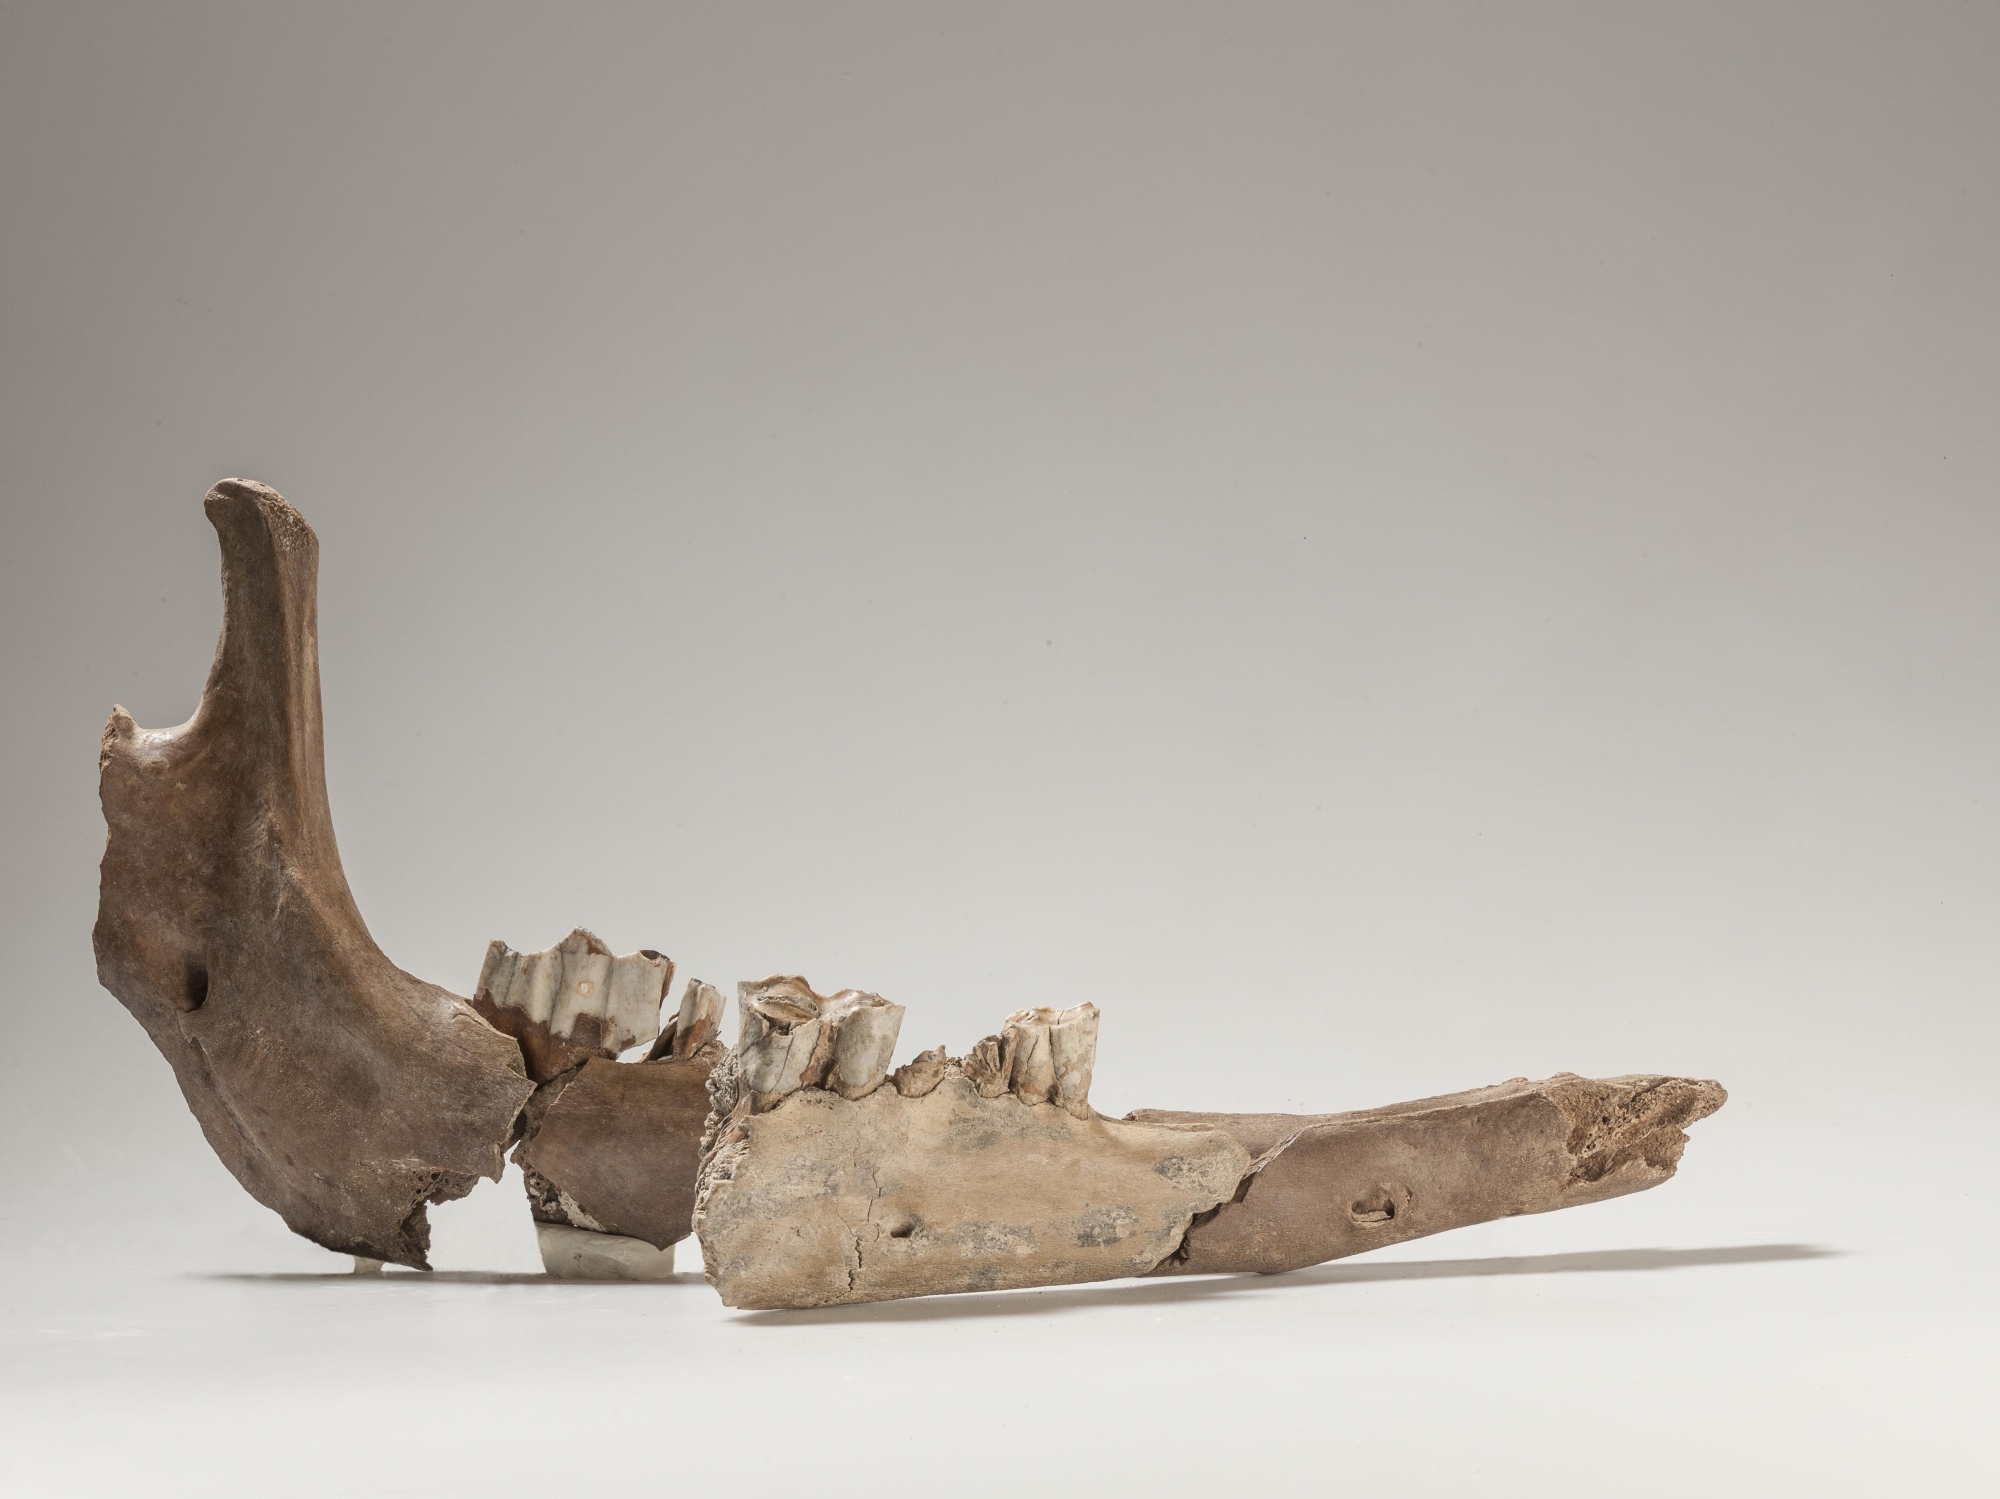 Les parties de la mandibule de chameau - retrouvées à 80 ans de distance - s'emboîtent. La pièce la plus brillante au milieu provient de la vieille excavation. 